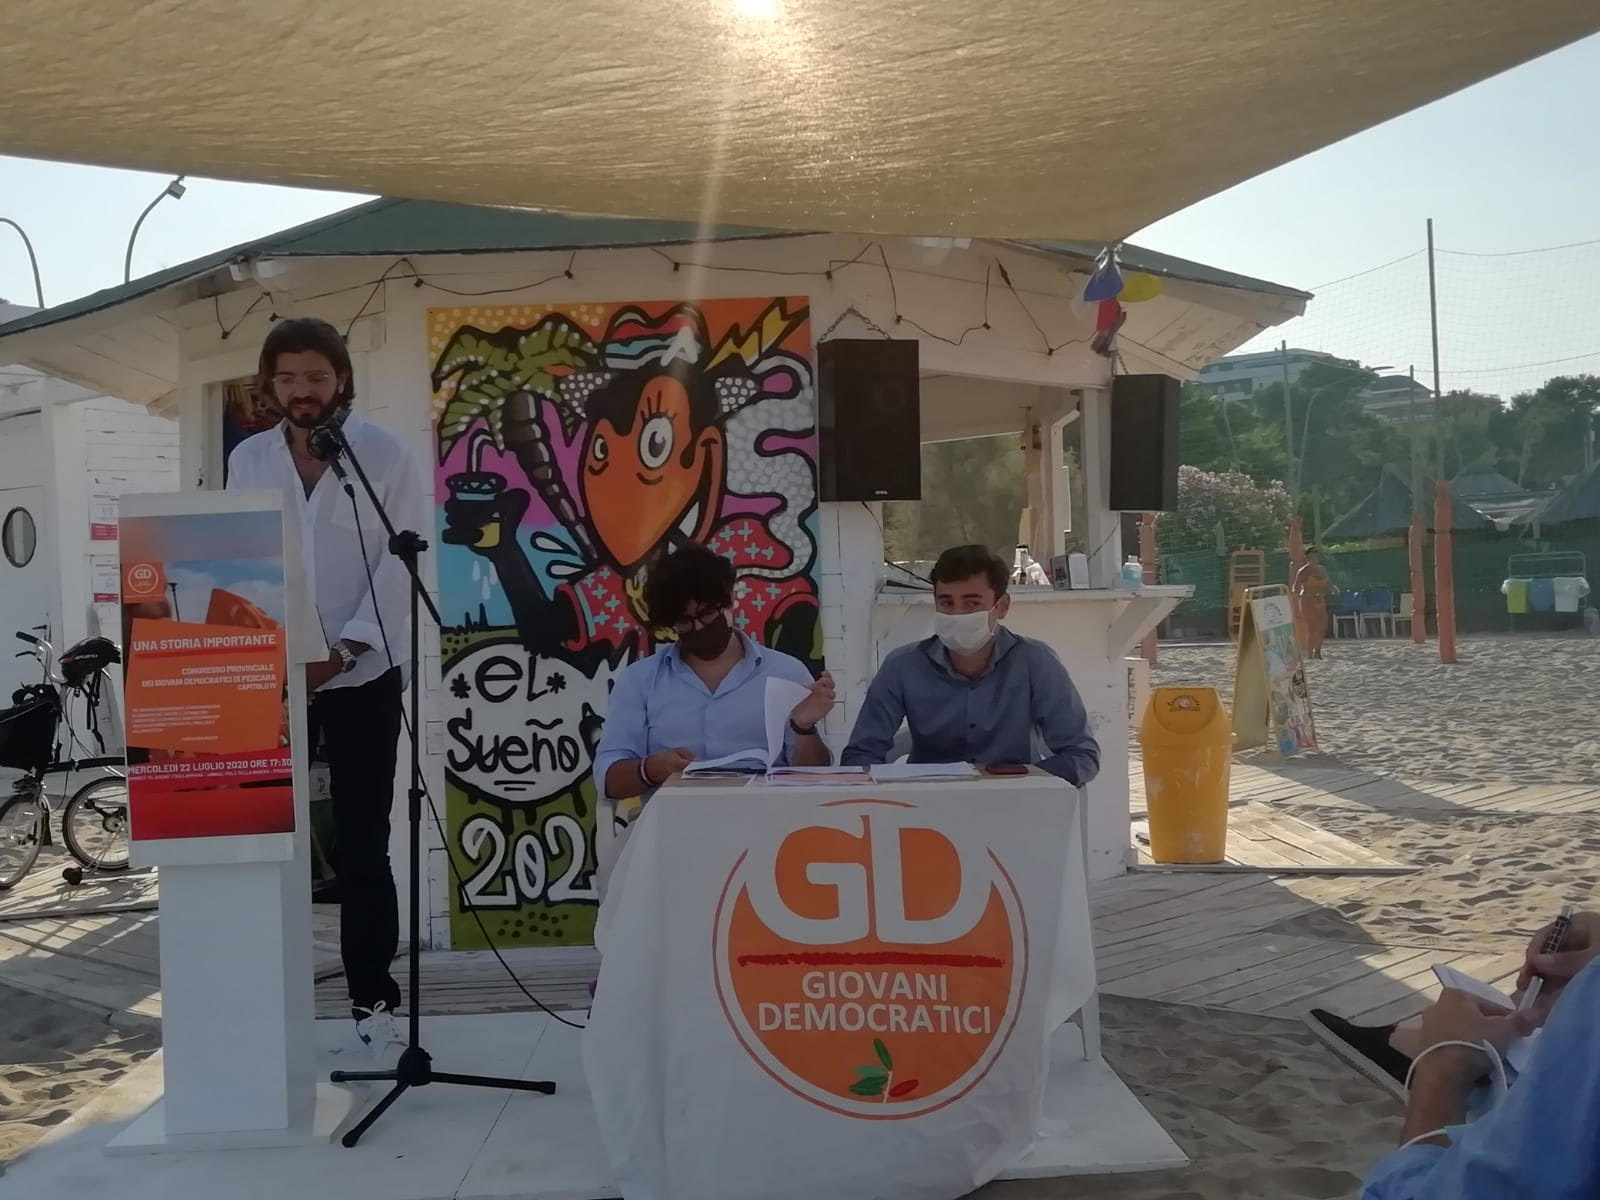 Marinari segretario provinciale GD Pescara: “Sconfiggere il malgoverno della destra”